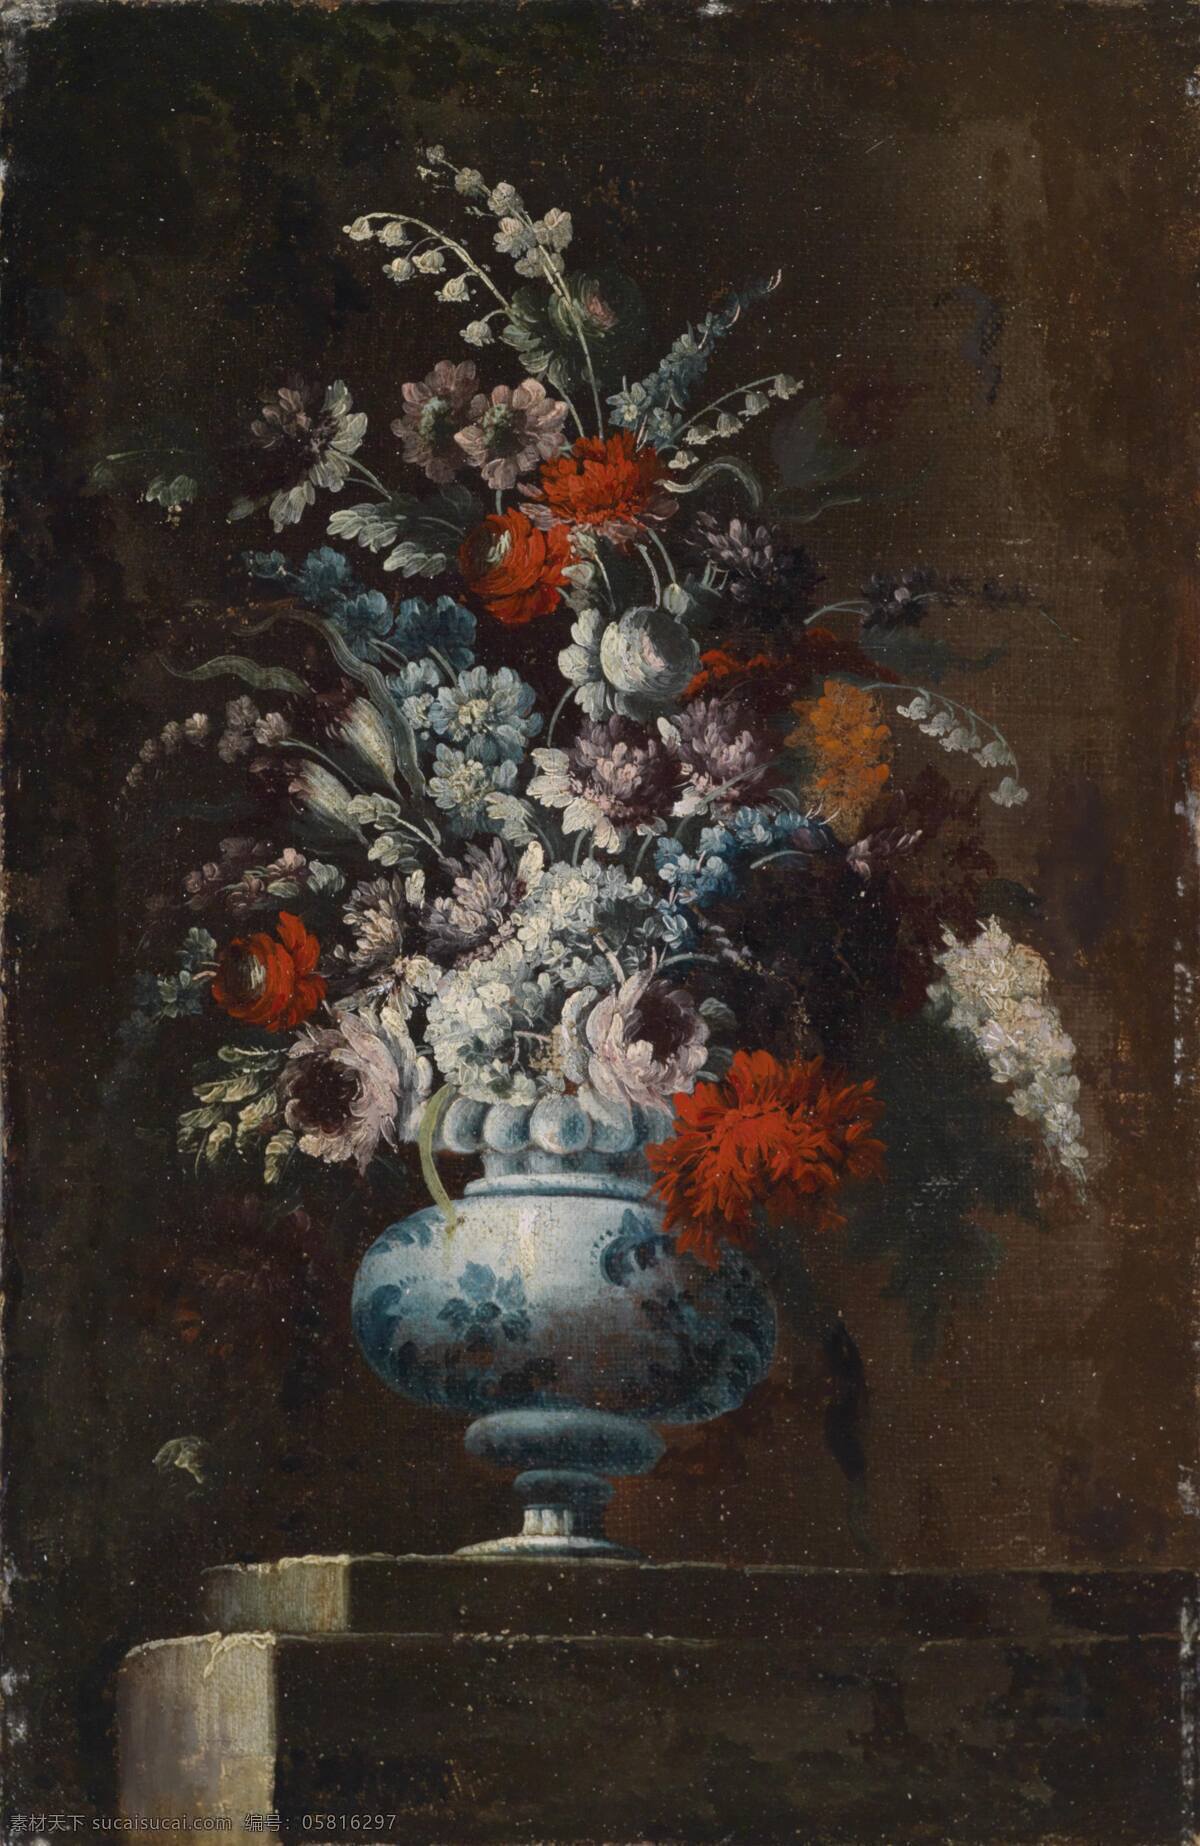 古典油画 花瓶 绘画书法 静物 文化艺术 油画 鲜花 设计素材 模板下载 静物鲜花 永恒之美 混搭鲜花 装饰素材